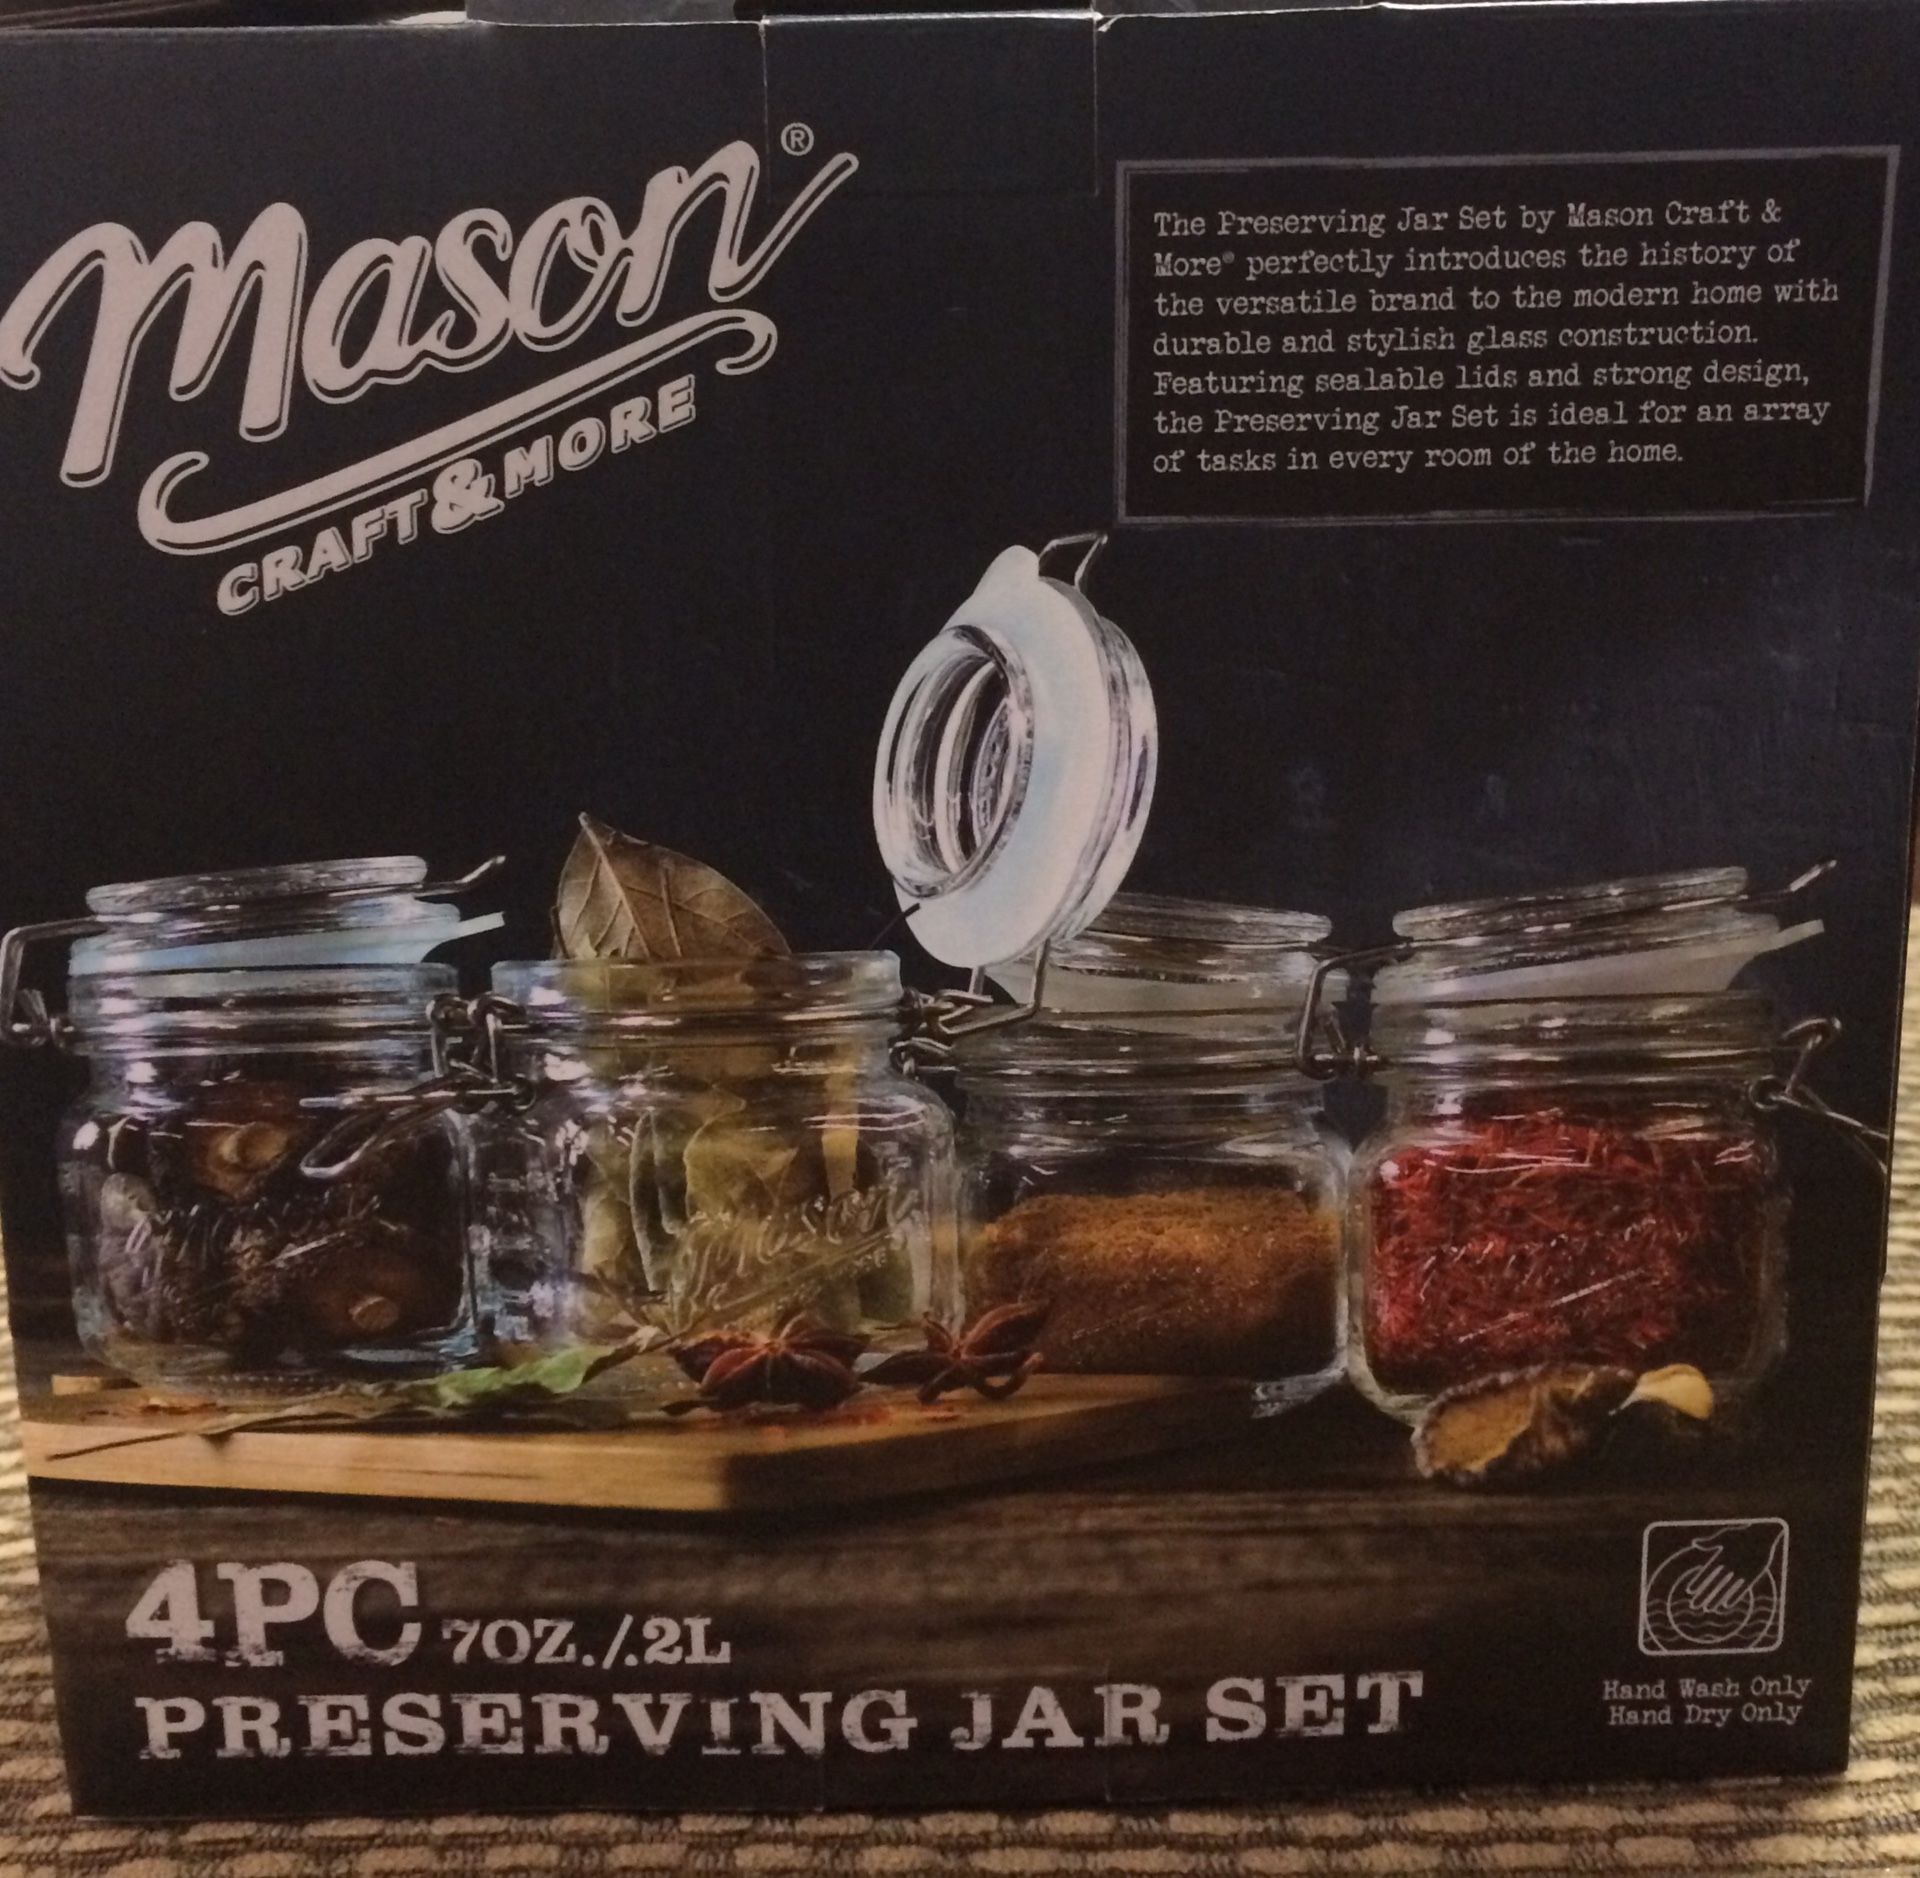 Mason Craft & More (4)pcs preserving jar set